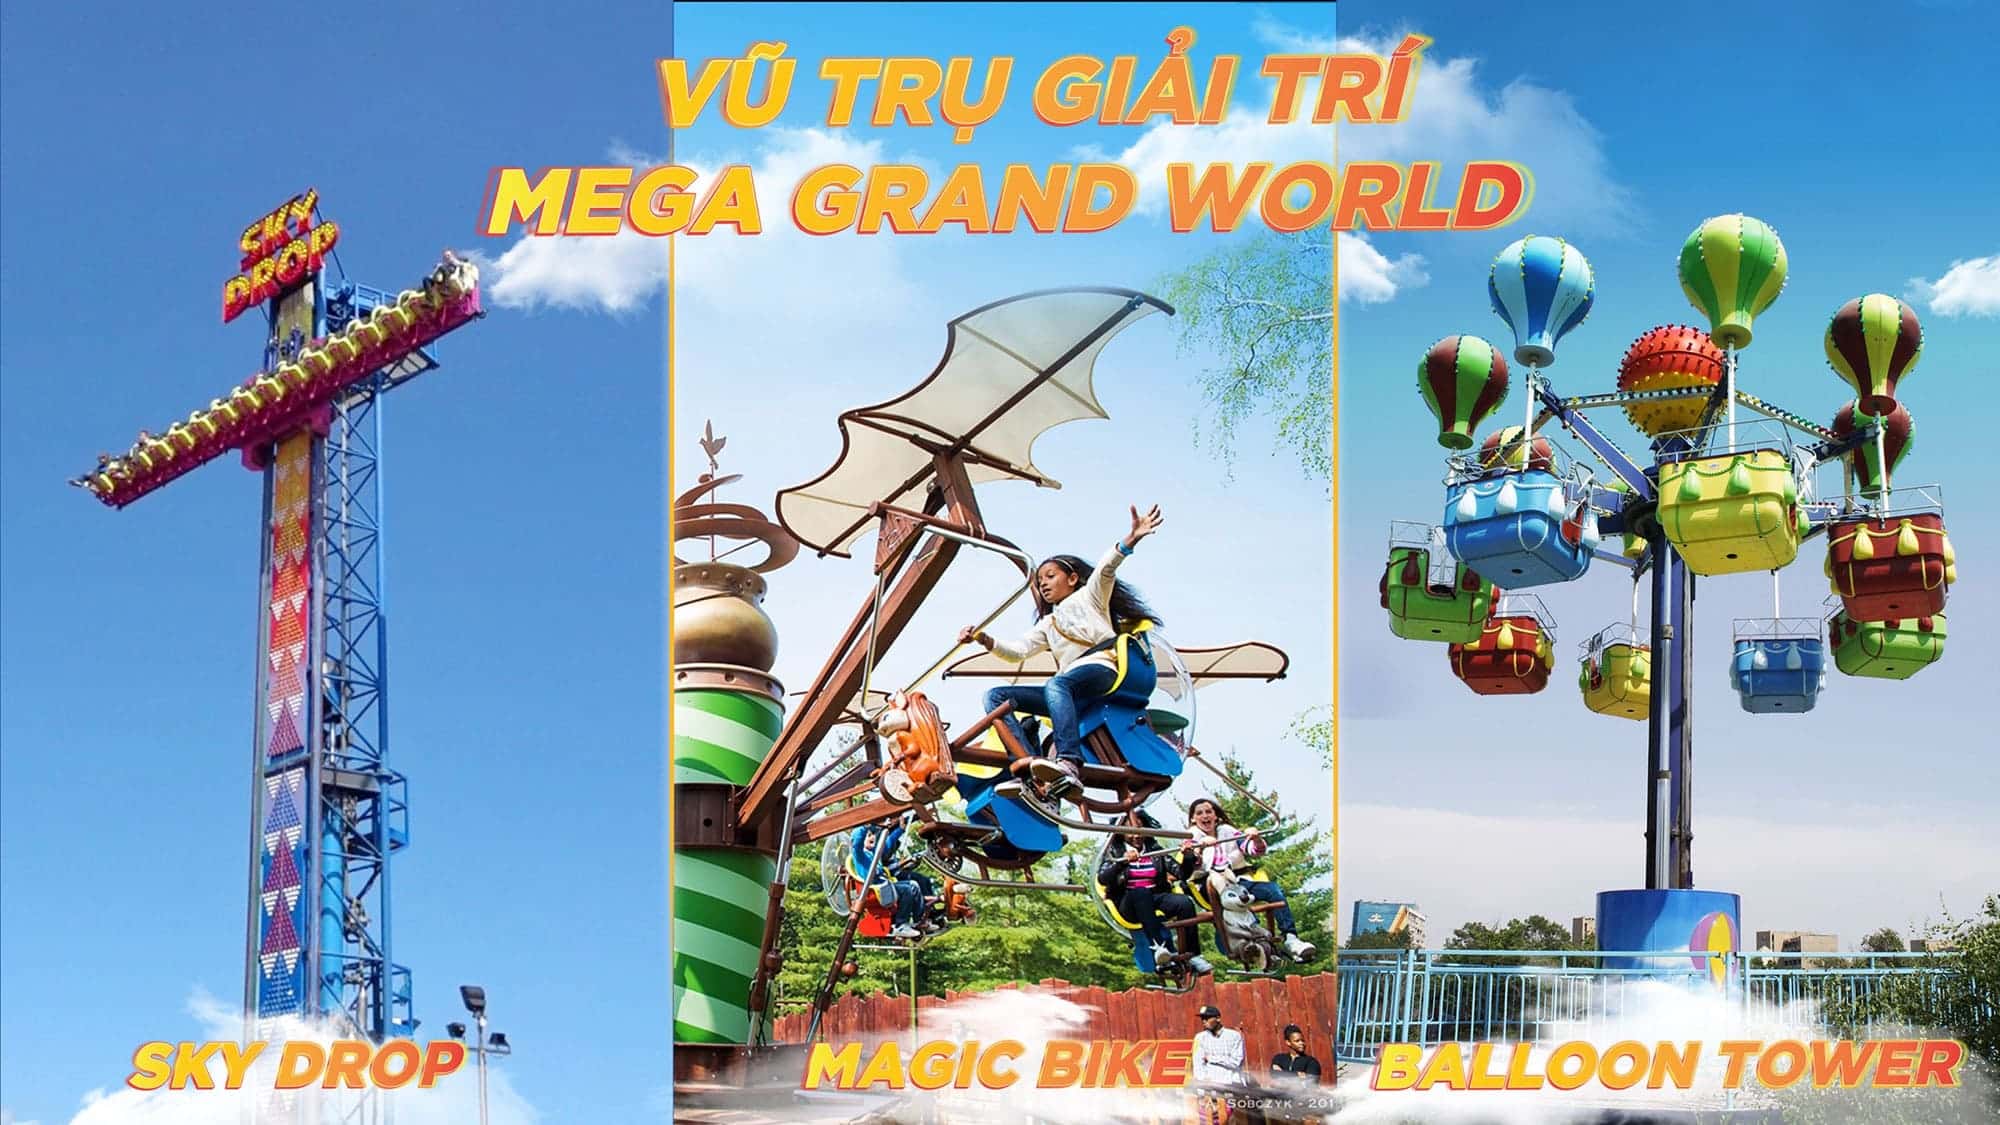 Mega Grand World là điểm đến của những cuộc vui, sự kiện và lễ hội hấp dẫn.